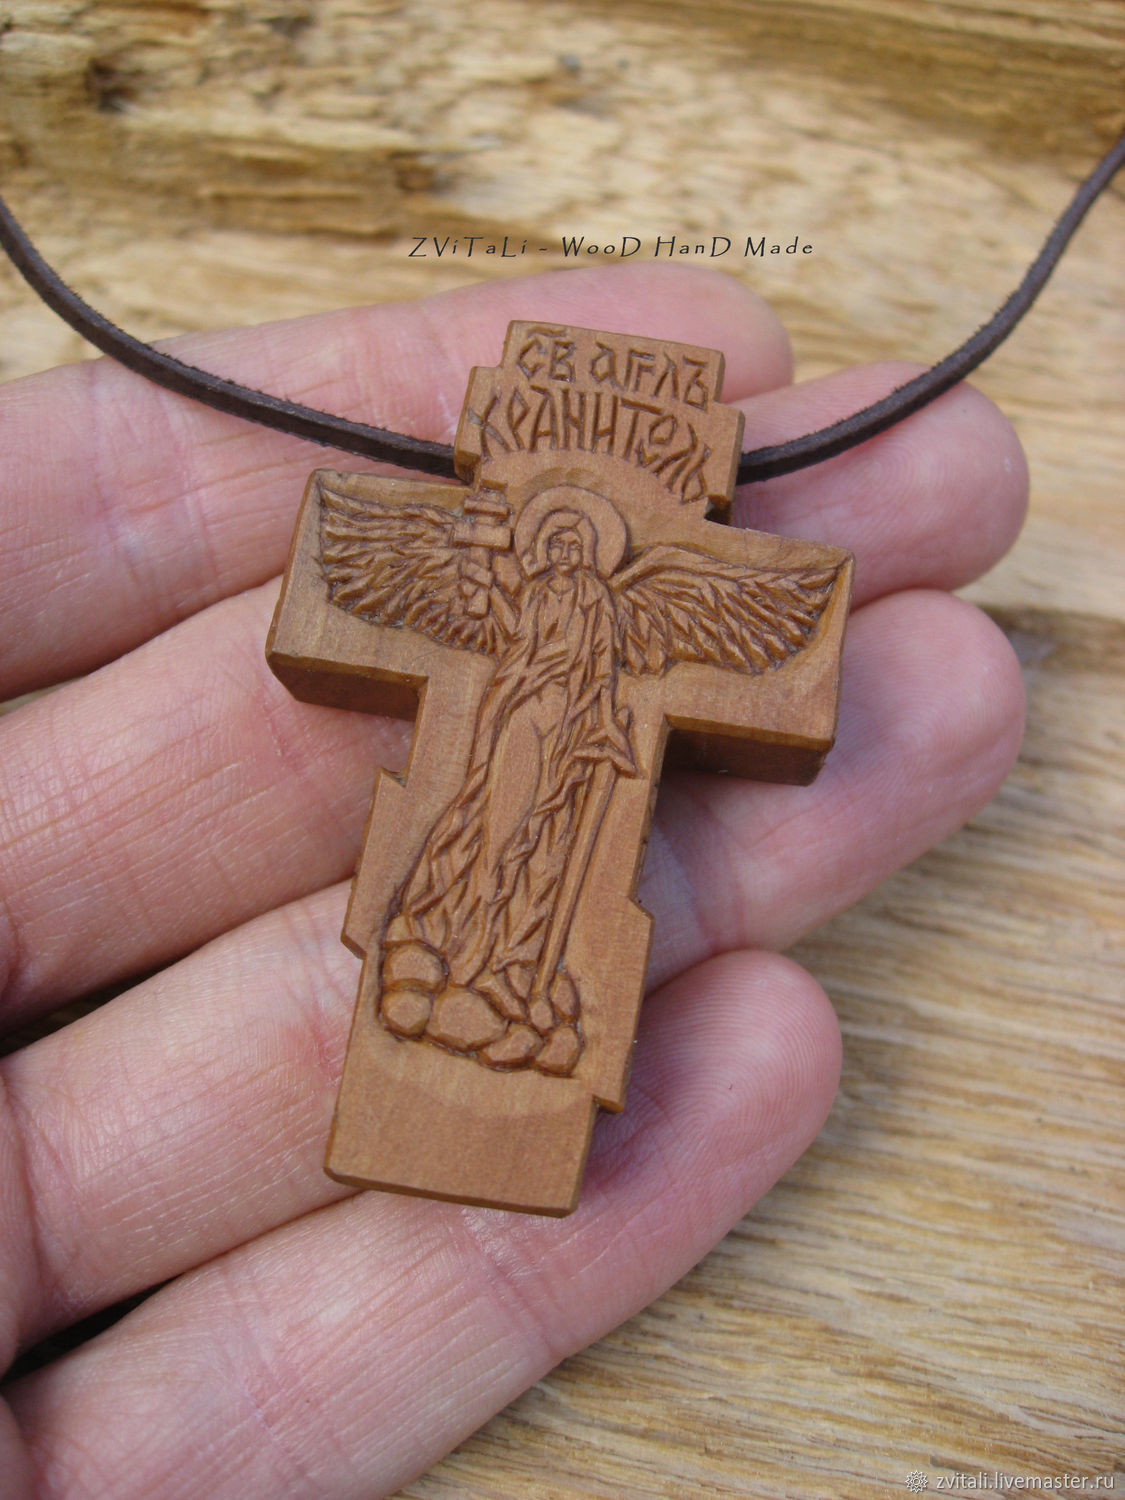 Купить нательный деревянный. Деревянный крестик. Крест нательный деревянный. Деревянный крест на шею. Крестик православный деревянный.